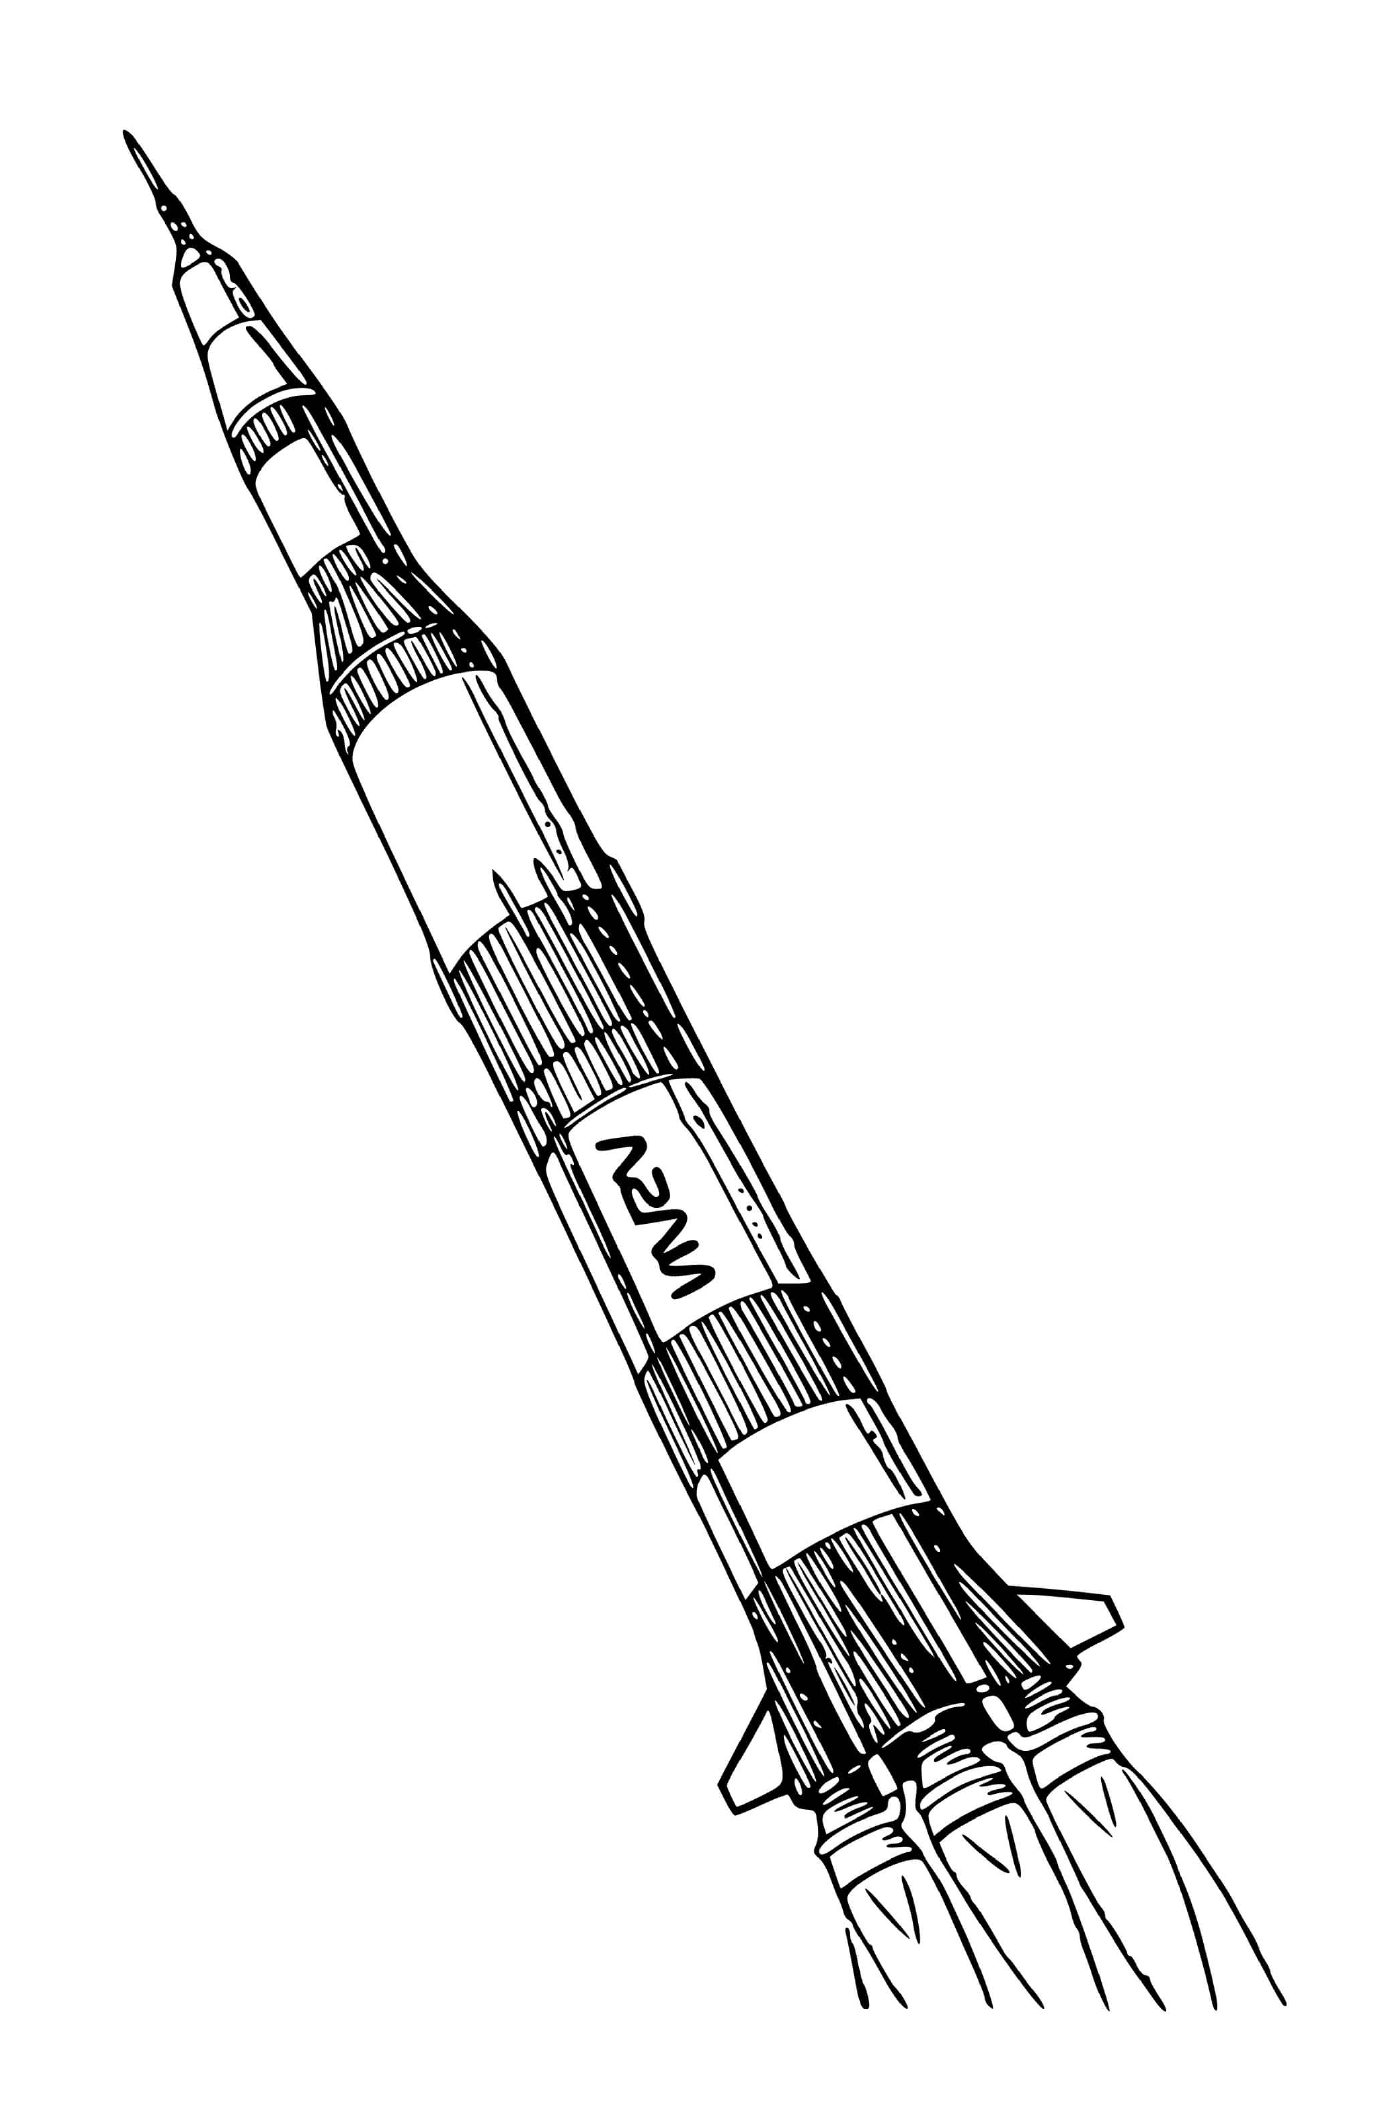 fusee nasa rocket